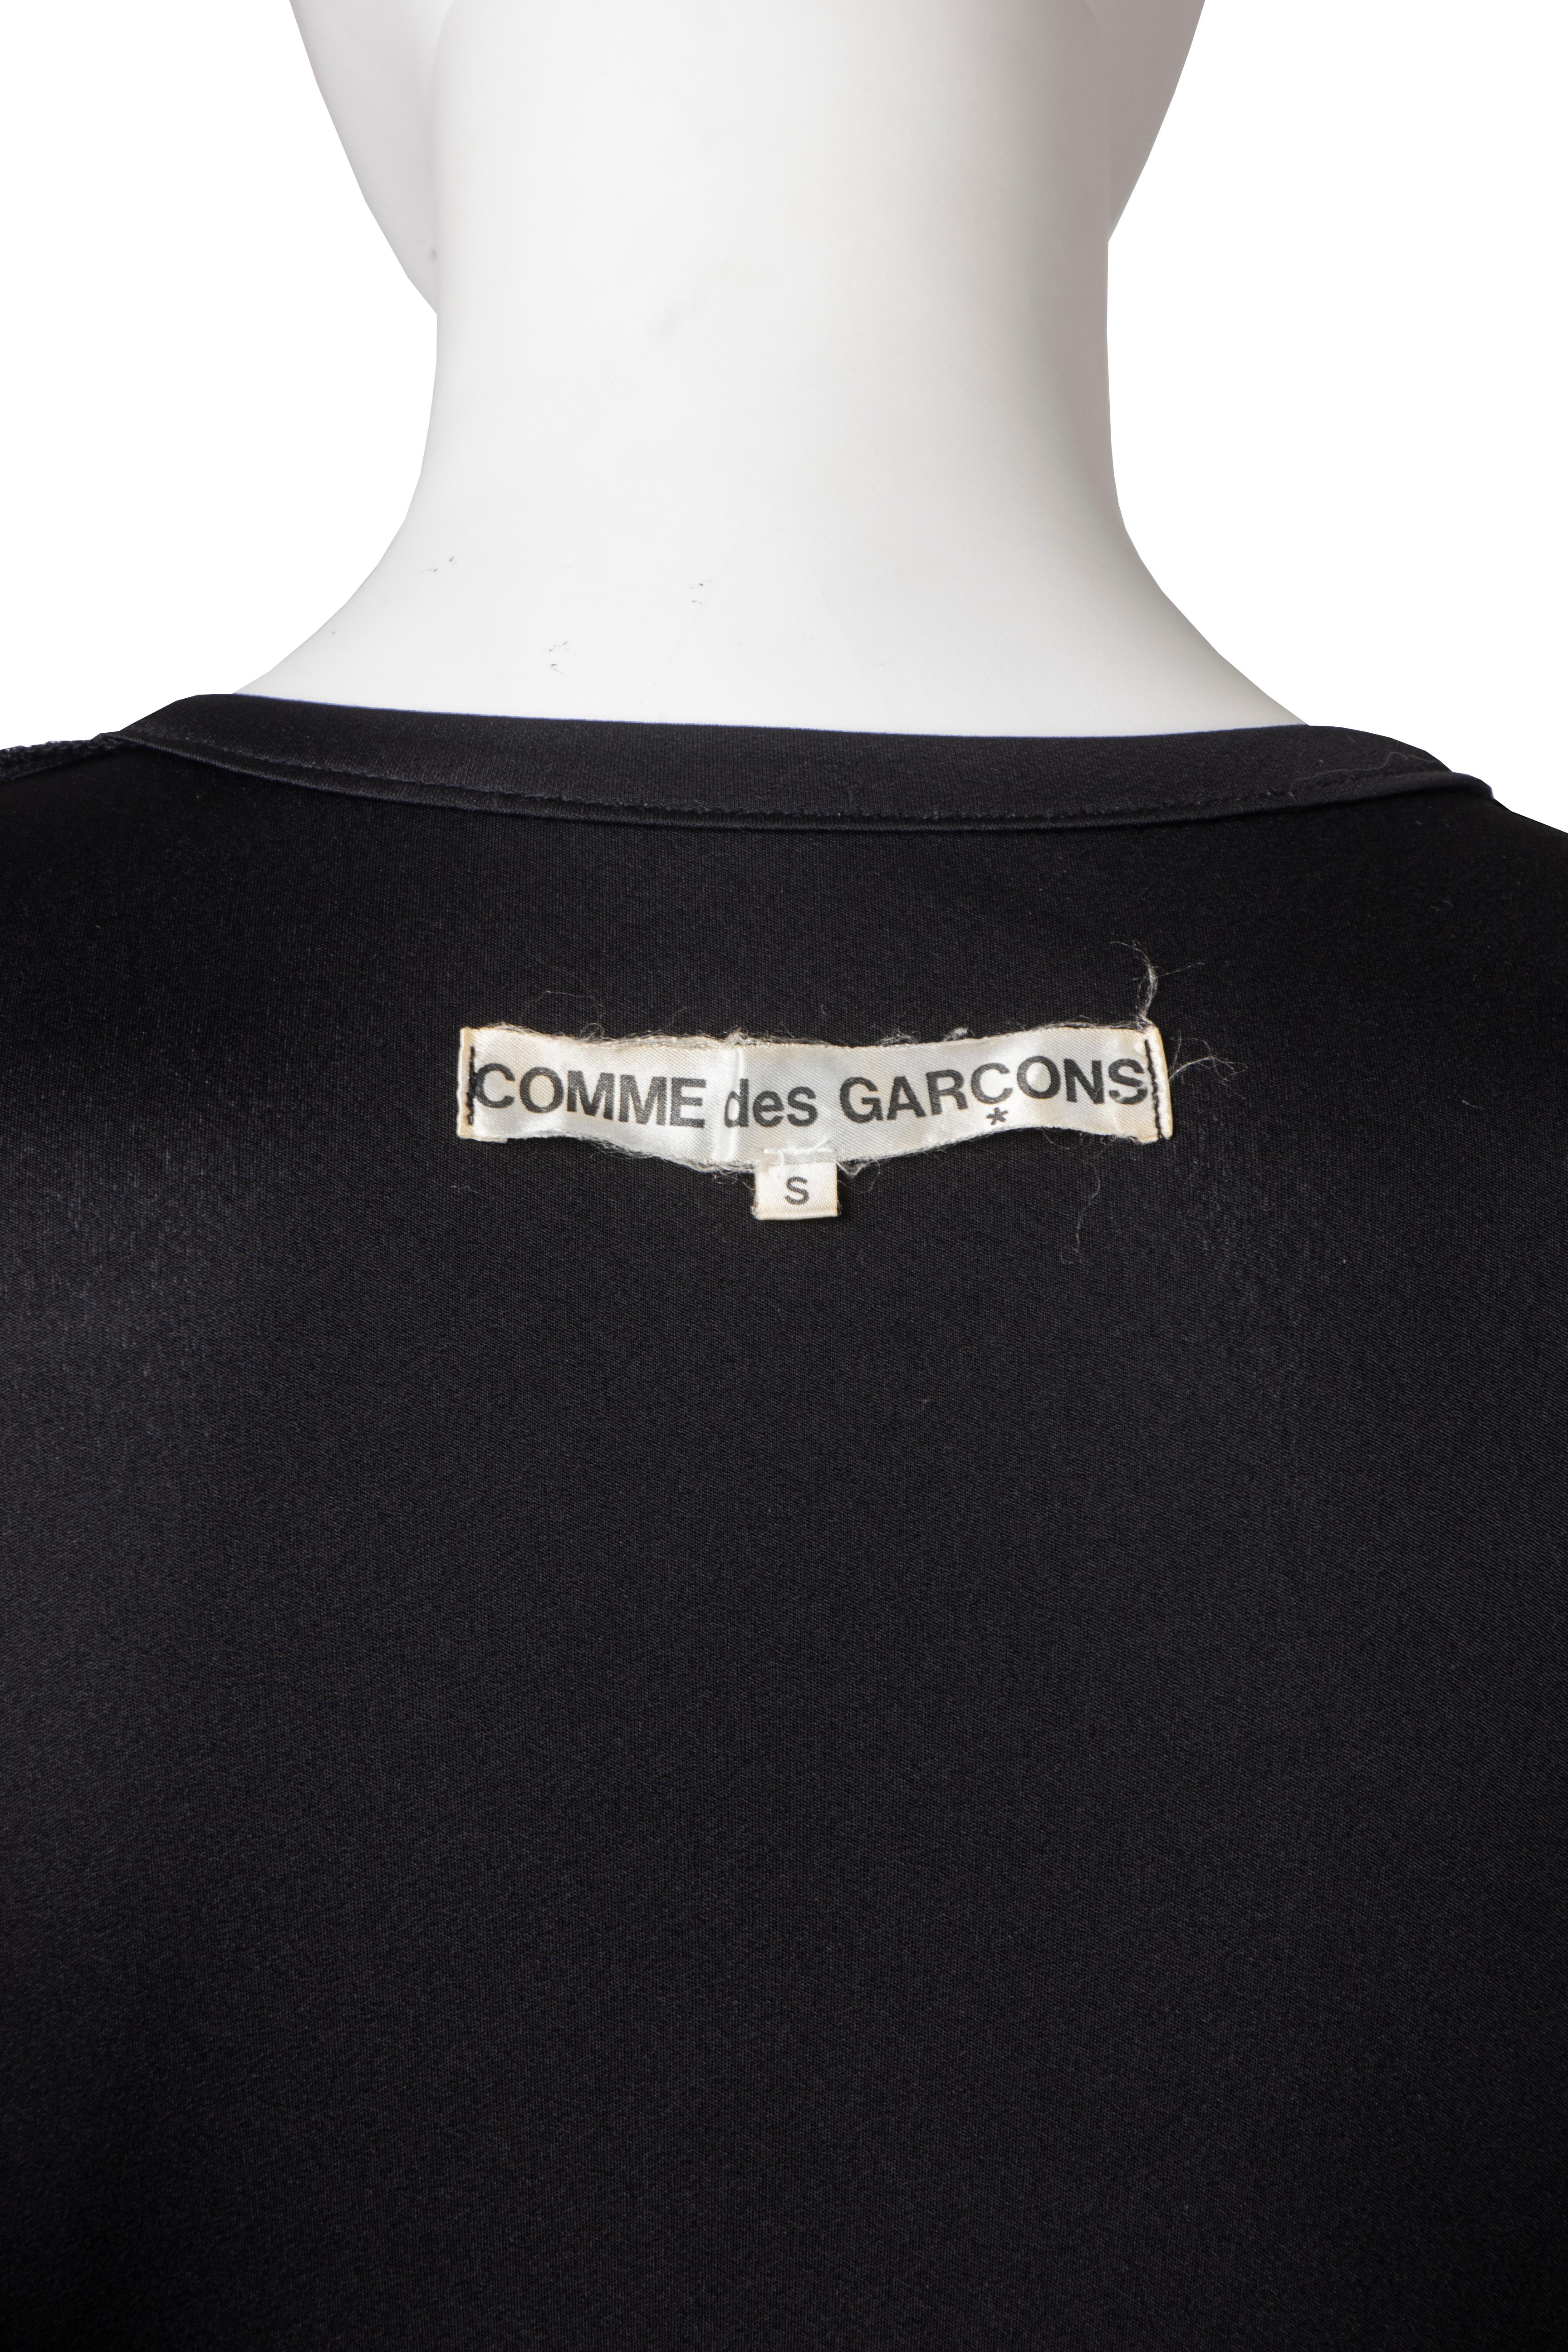 Comme Des Garcons bias cut satin jersey dress, ss 1986 For Sale 2